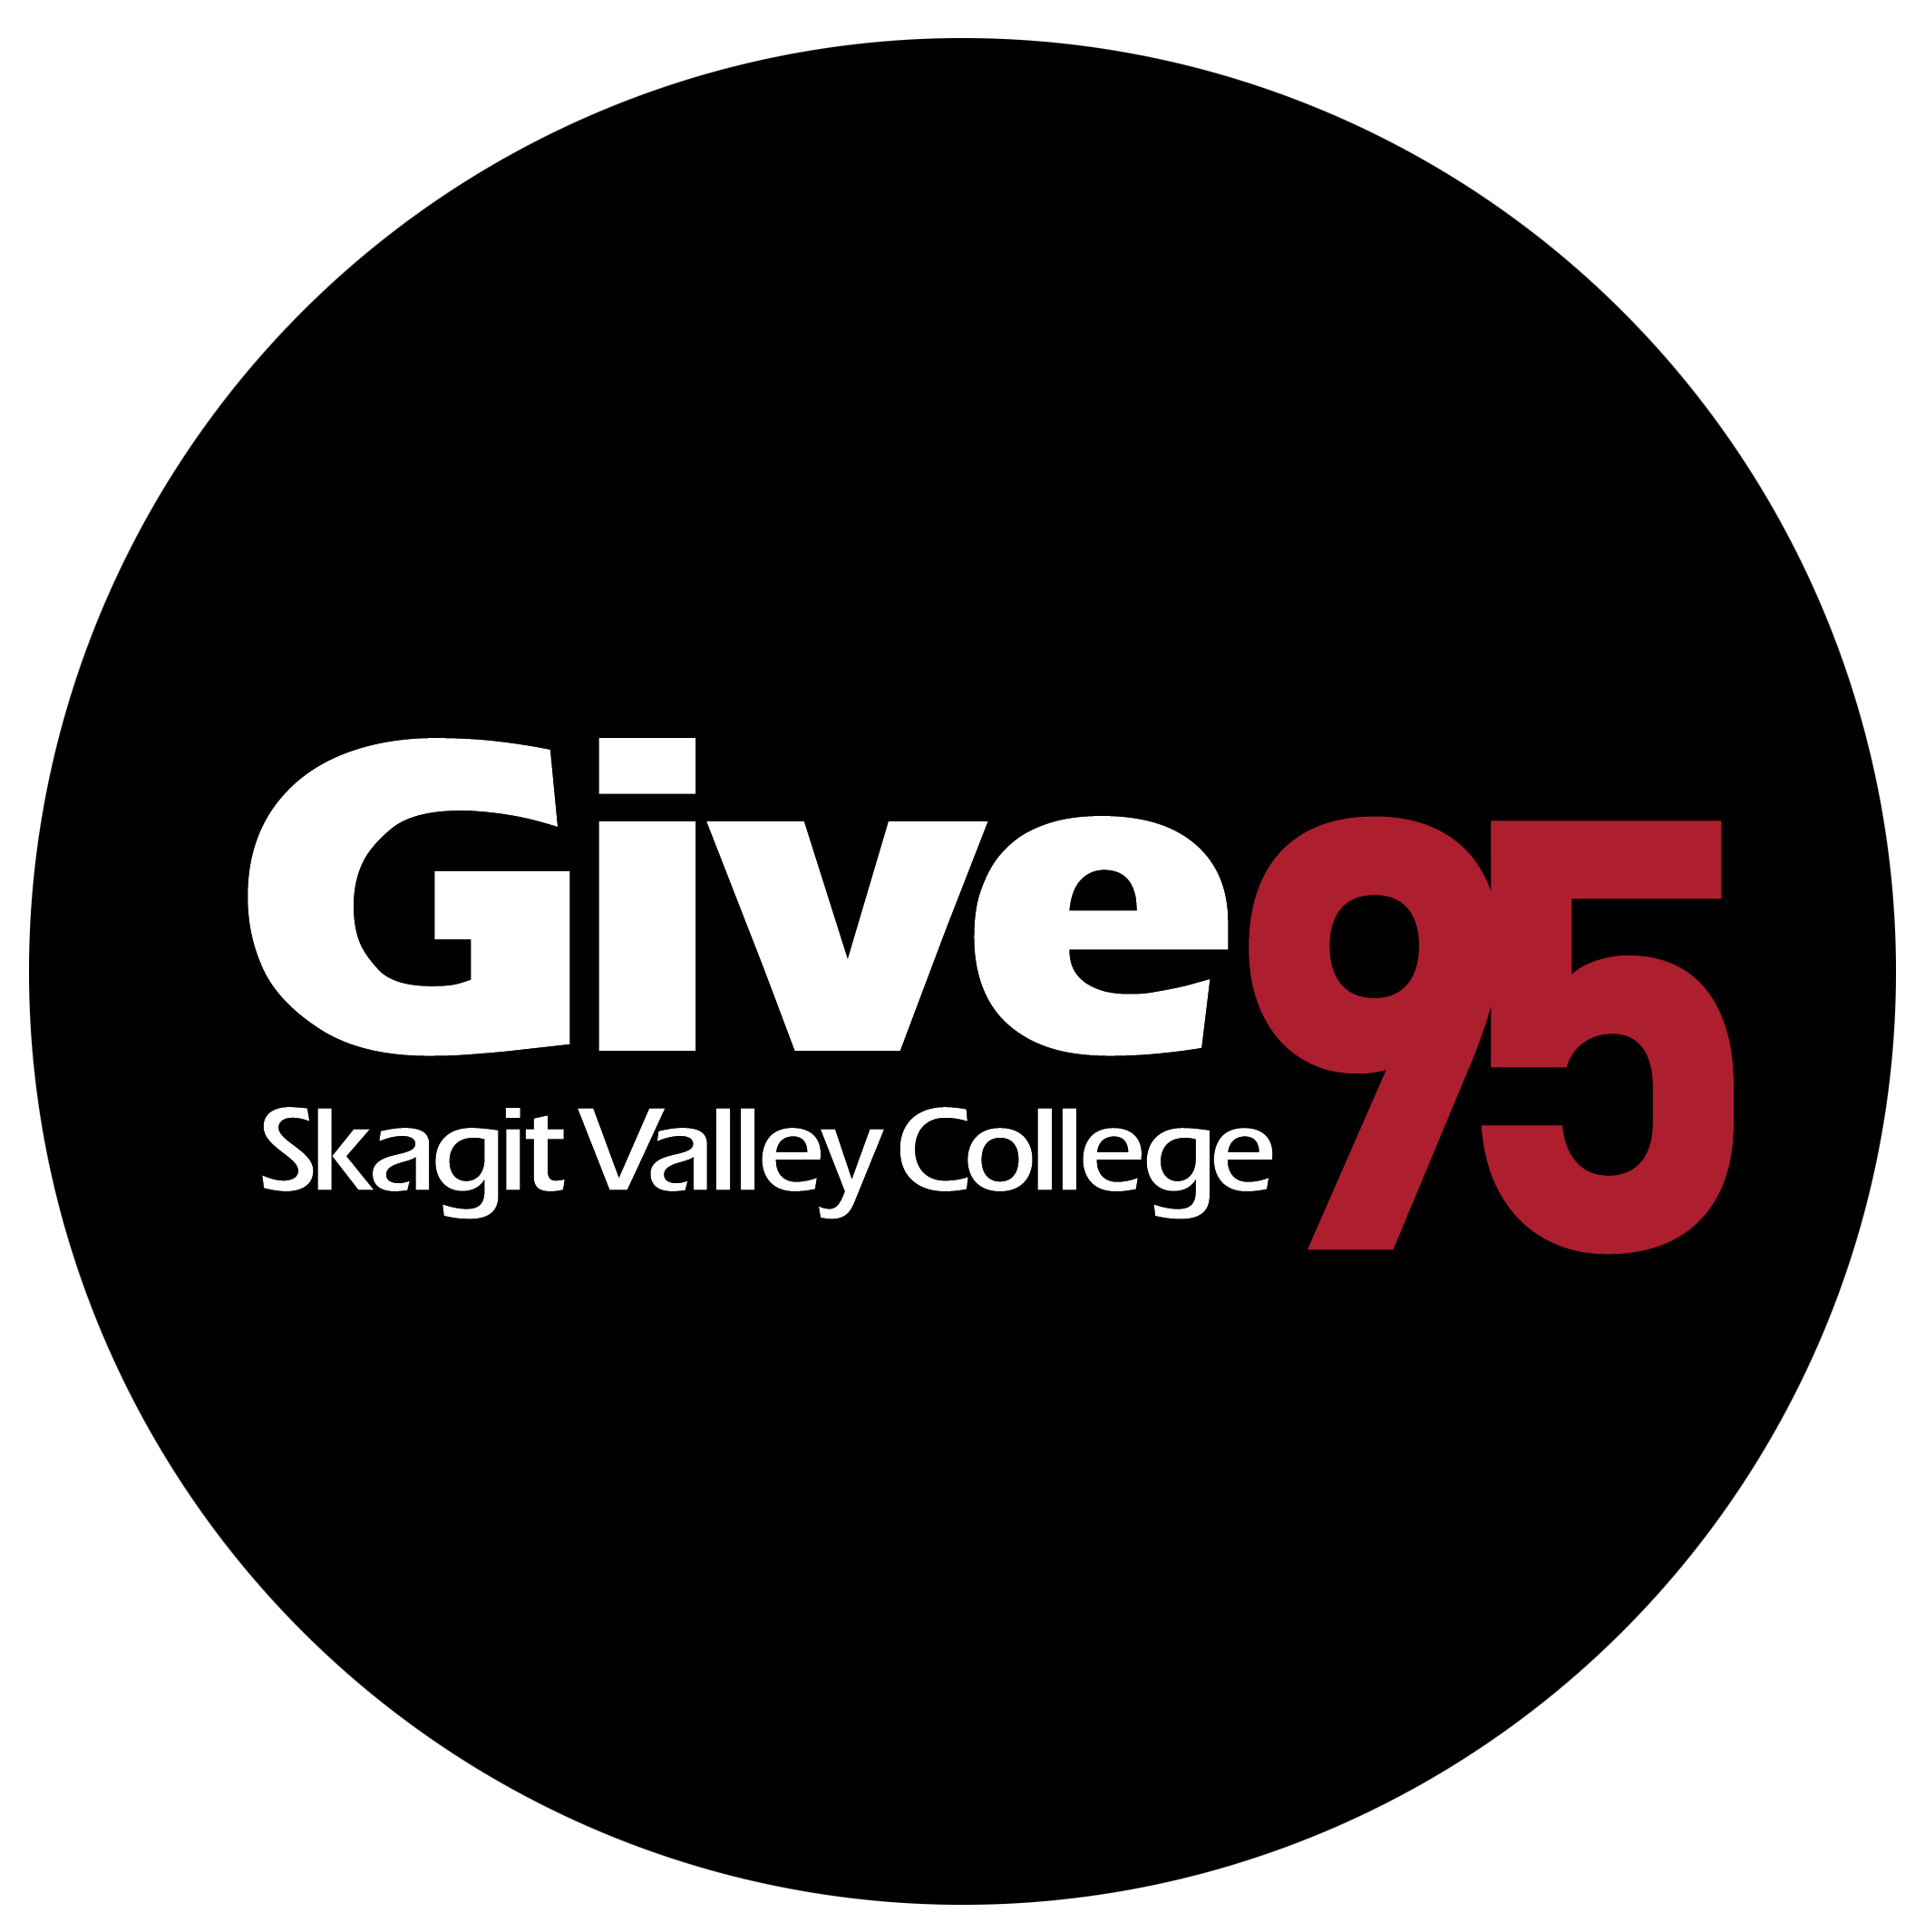 circle Give 95 logo